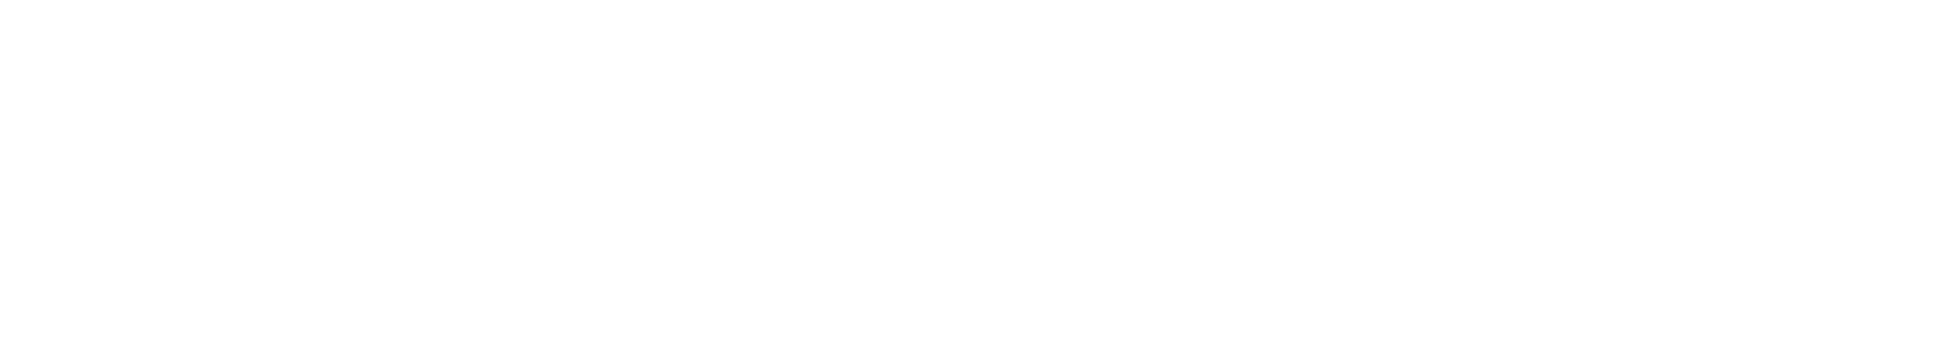 Logotyp Agrodoradca